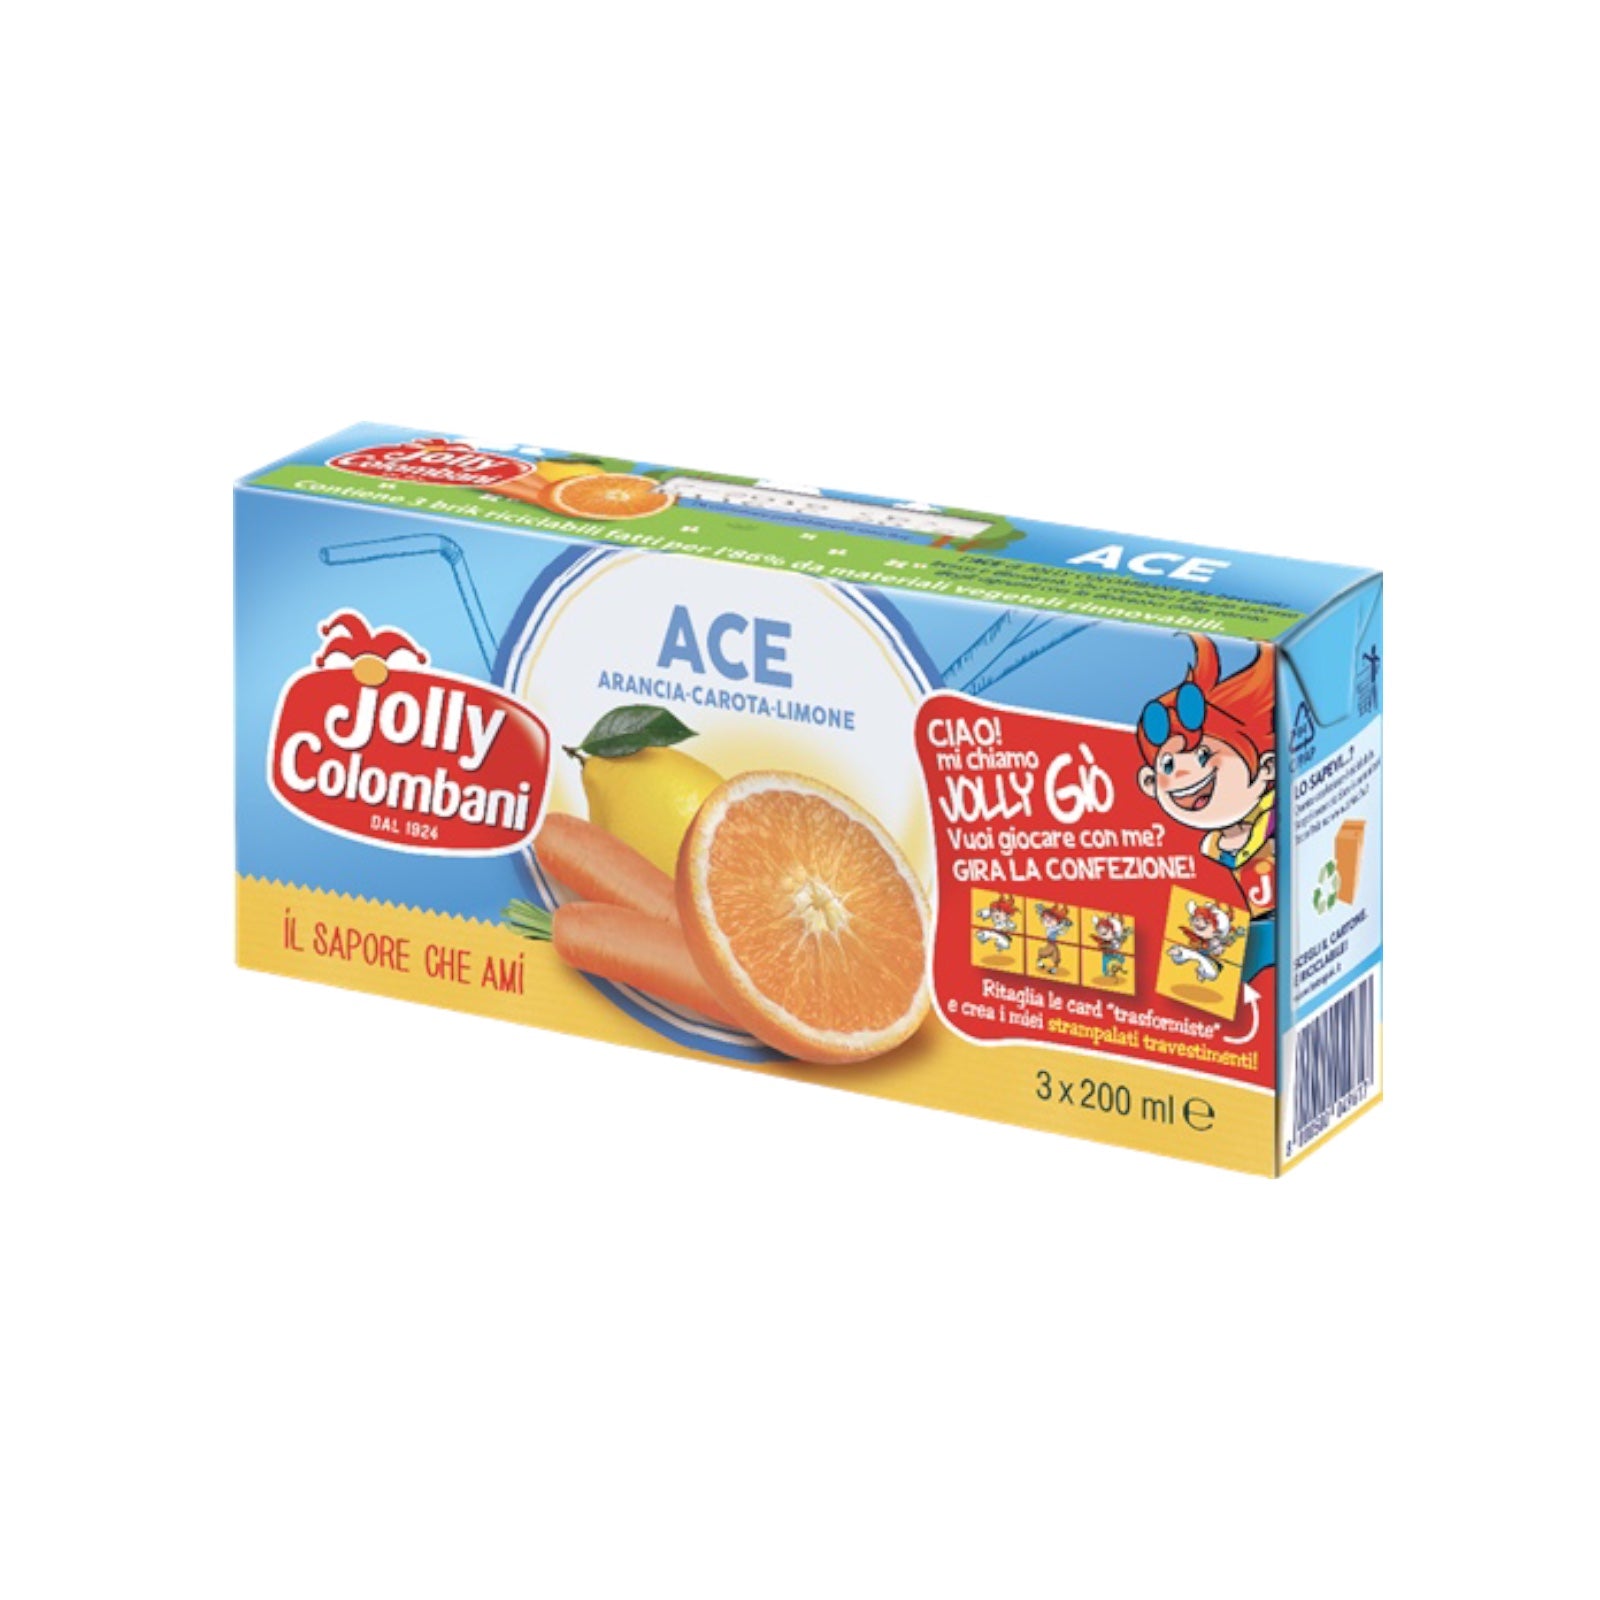 Ace Juice 3x200ml By Jolly Colombani